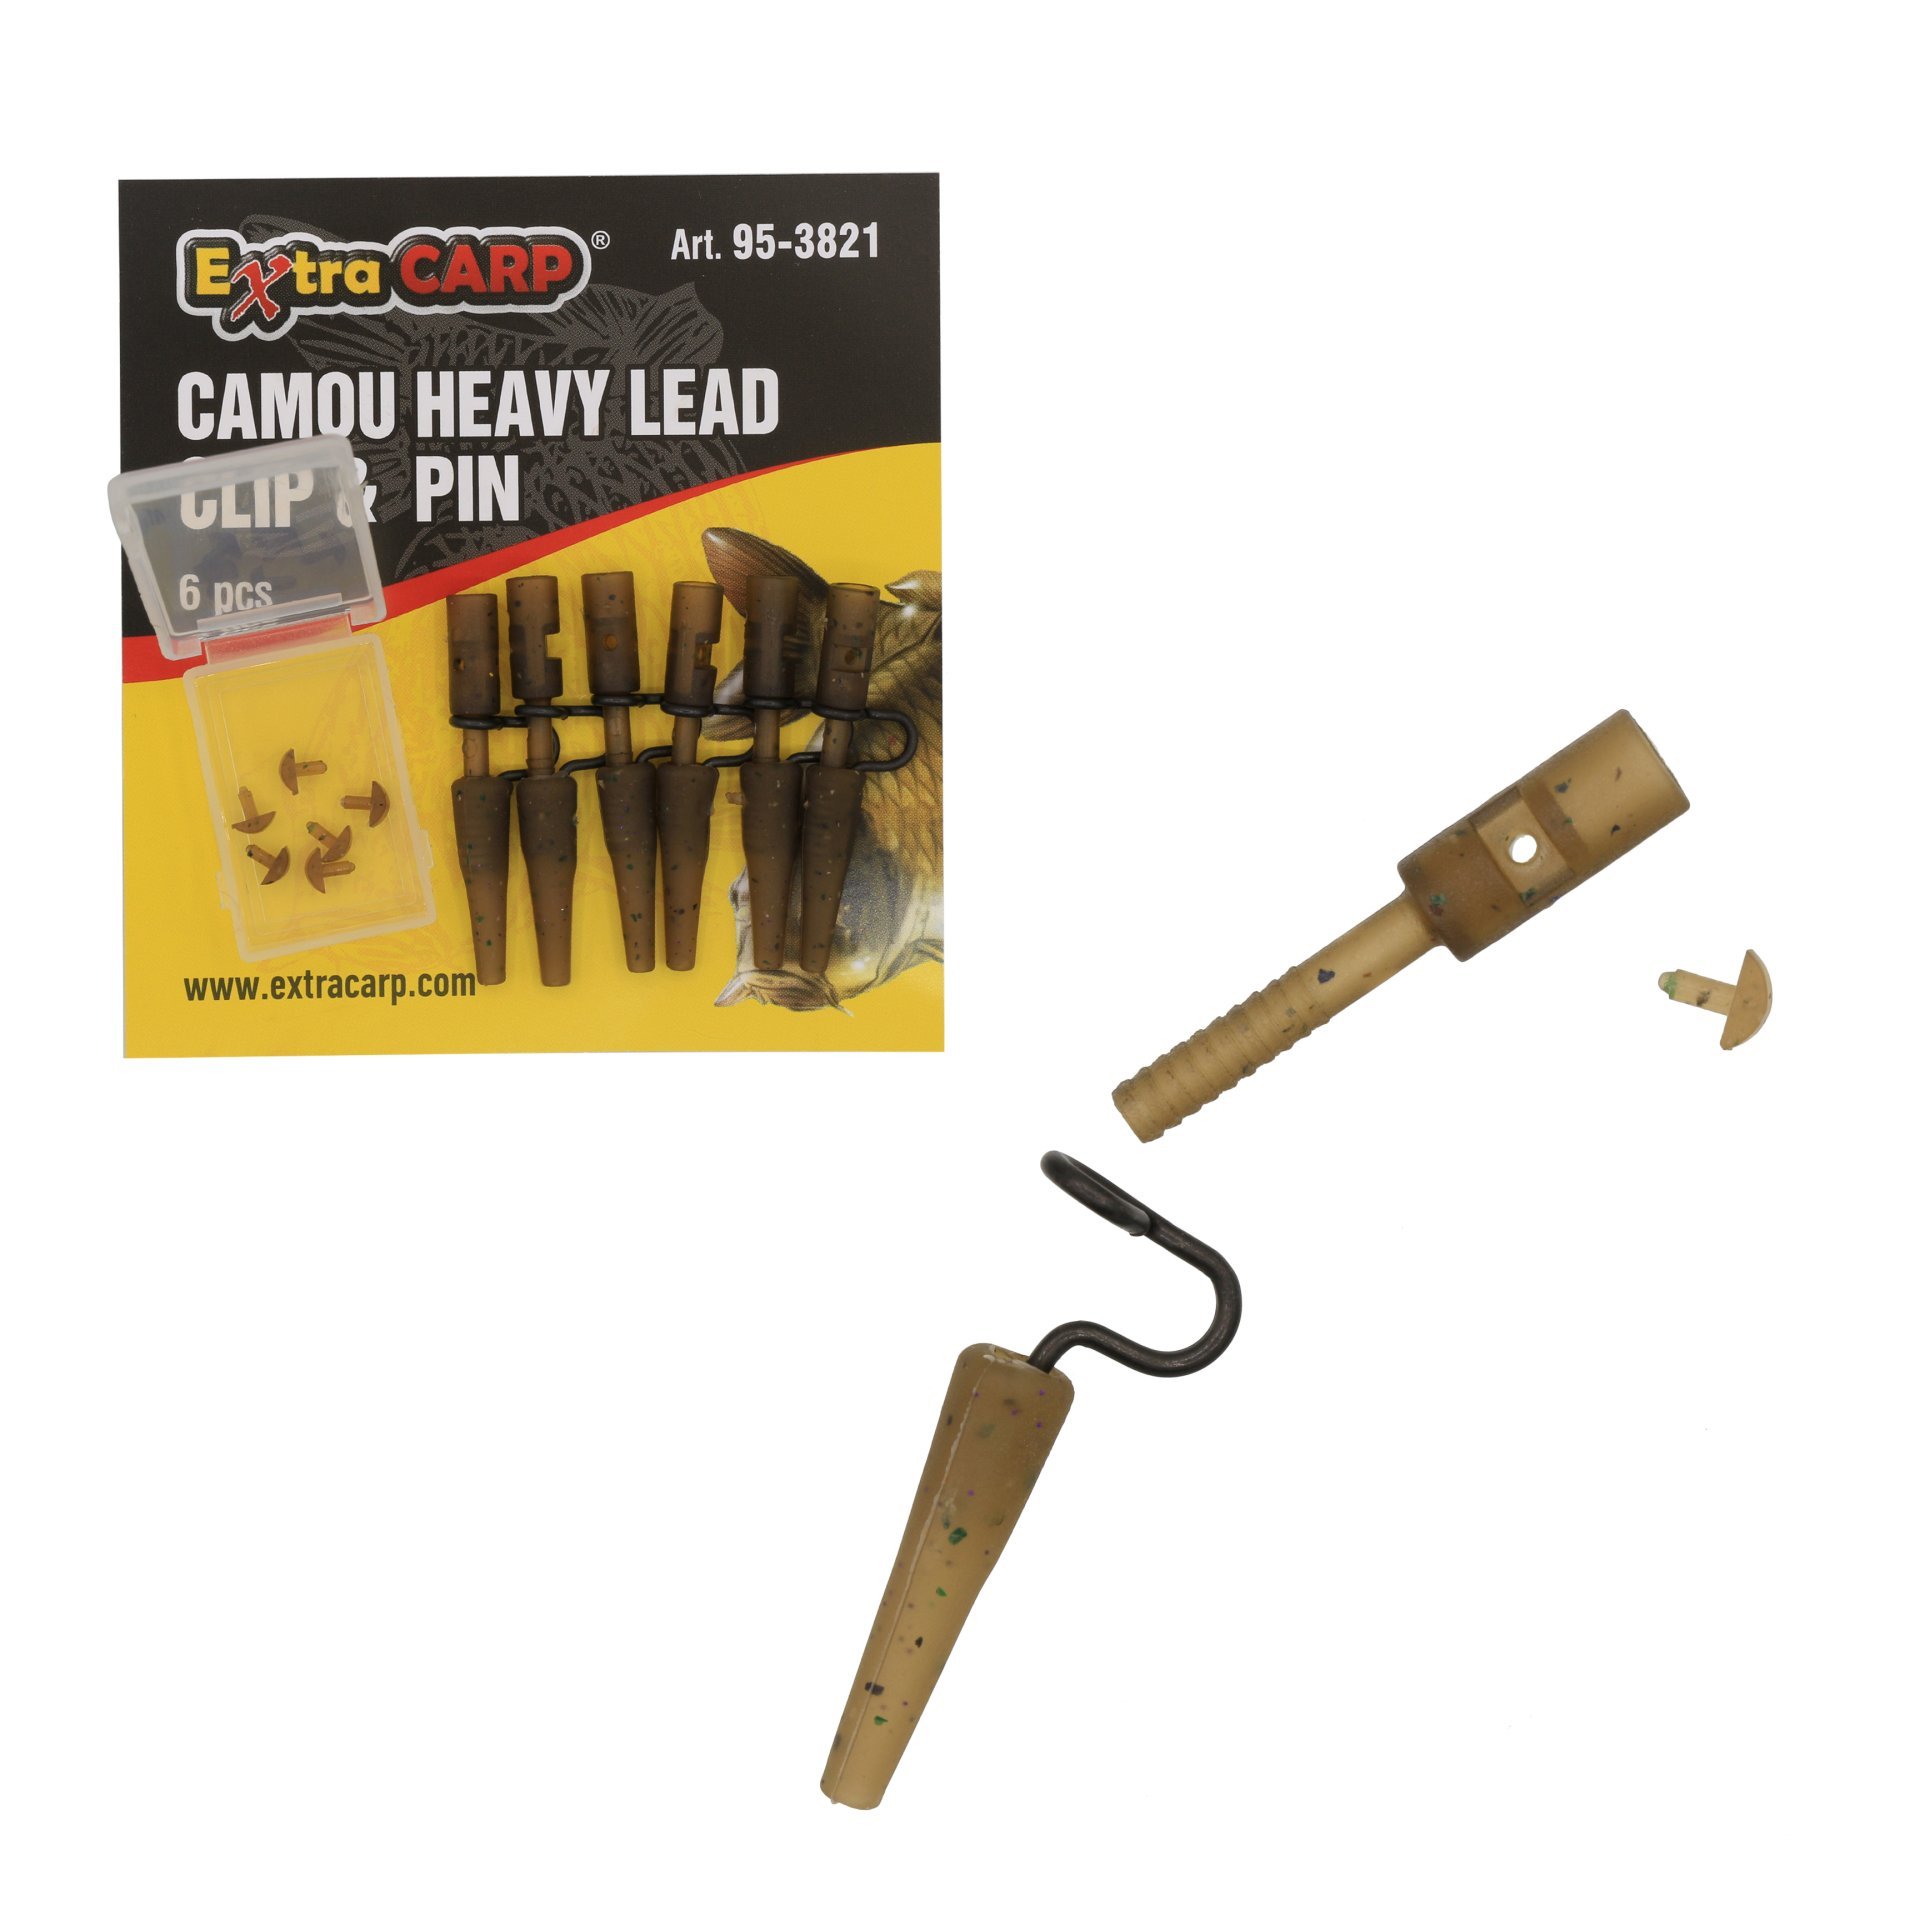 Camou Heavy Lead Clip & Pin 6